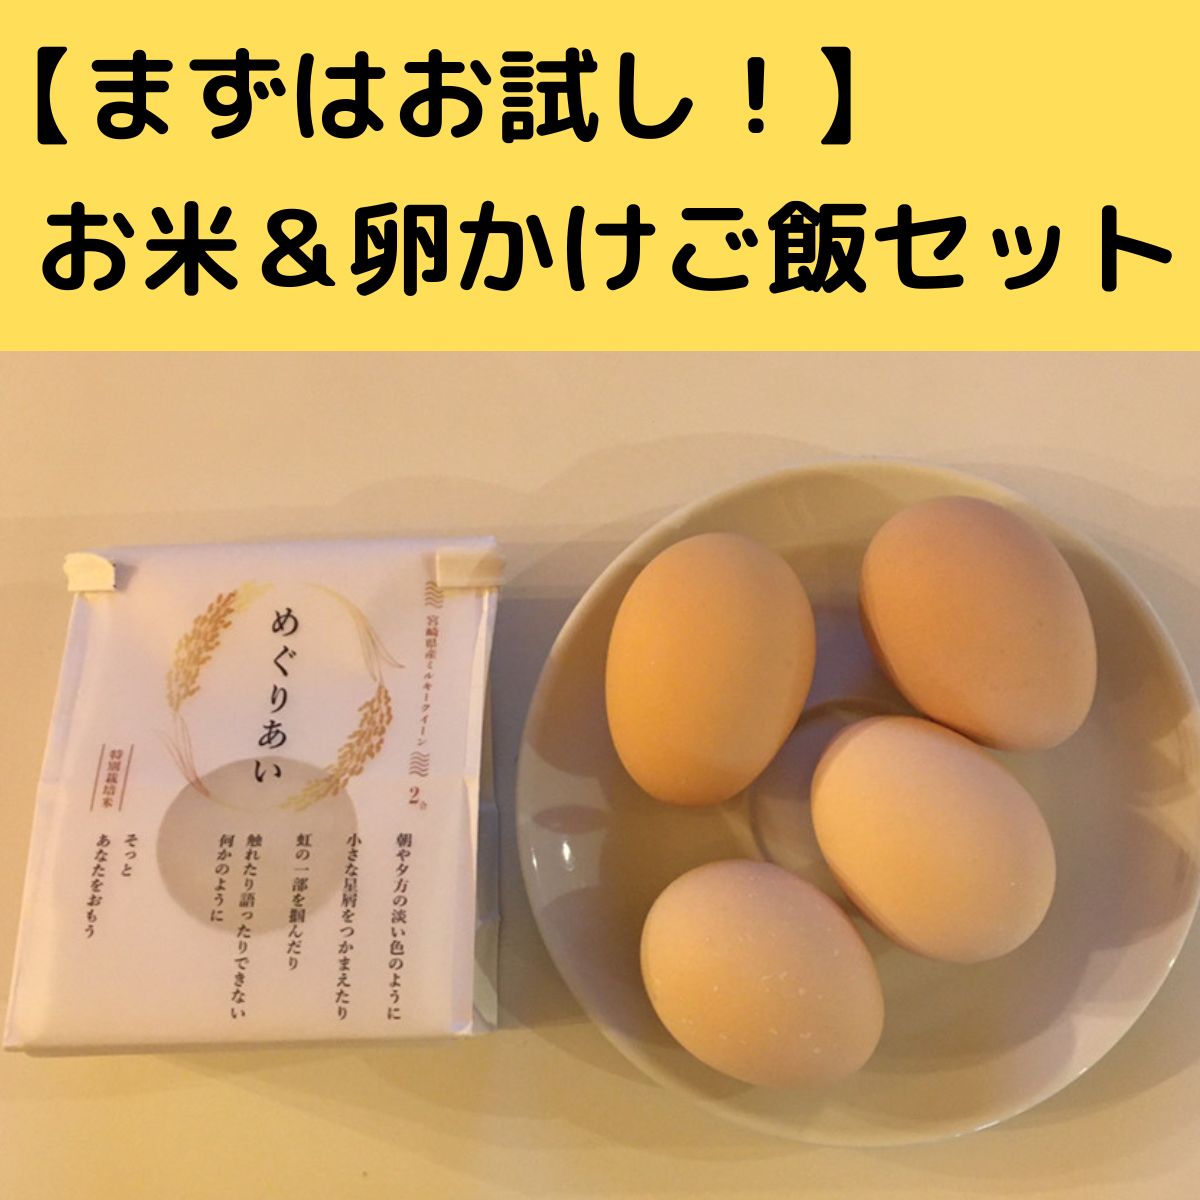 【お試し】お米&卵セット